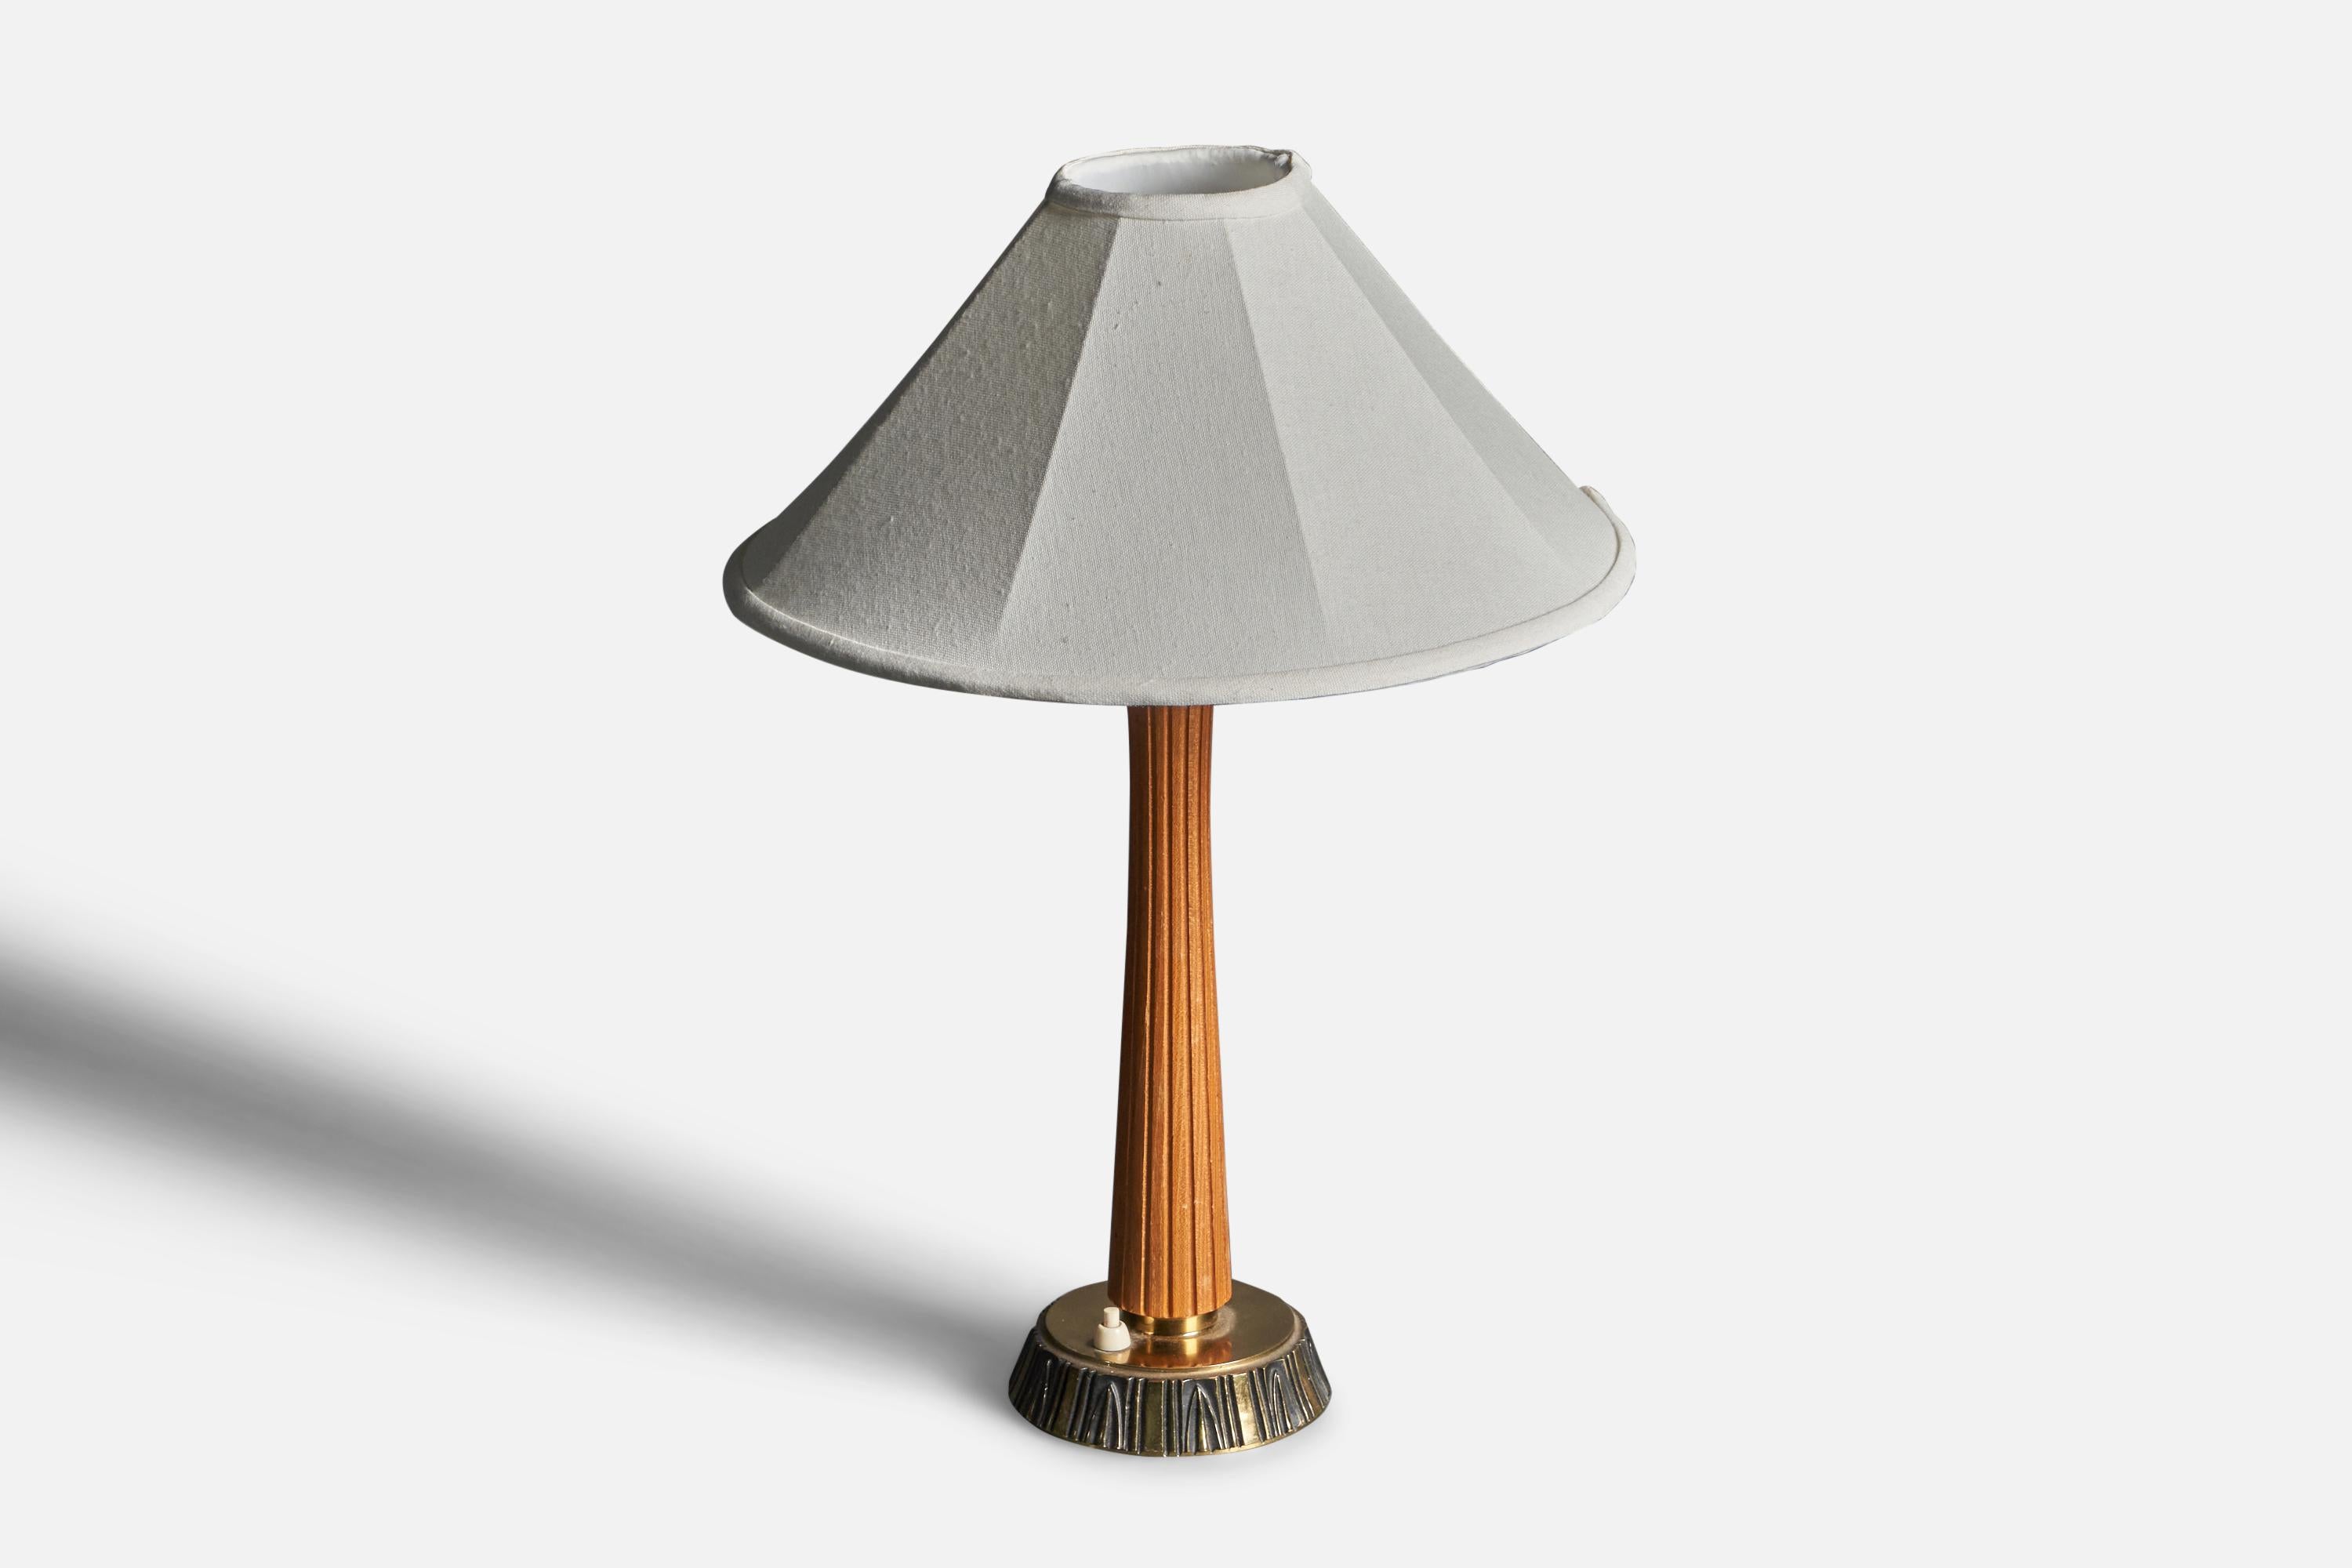 Eine Tischleuchte / Schreibtischlampe. Entworfen von der schwedischen Bildhauerin Sonja Katzin, (1919-2014). Produziert von ASEA, Schweden, 1950er Jahre. Gestempelt.

Die angegebenen Maße verstehen sich ohne Lampenschirm. Höhe einschließlich